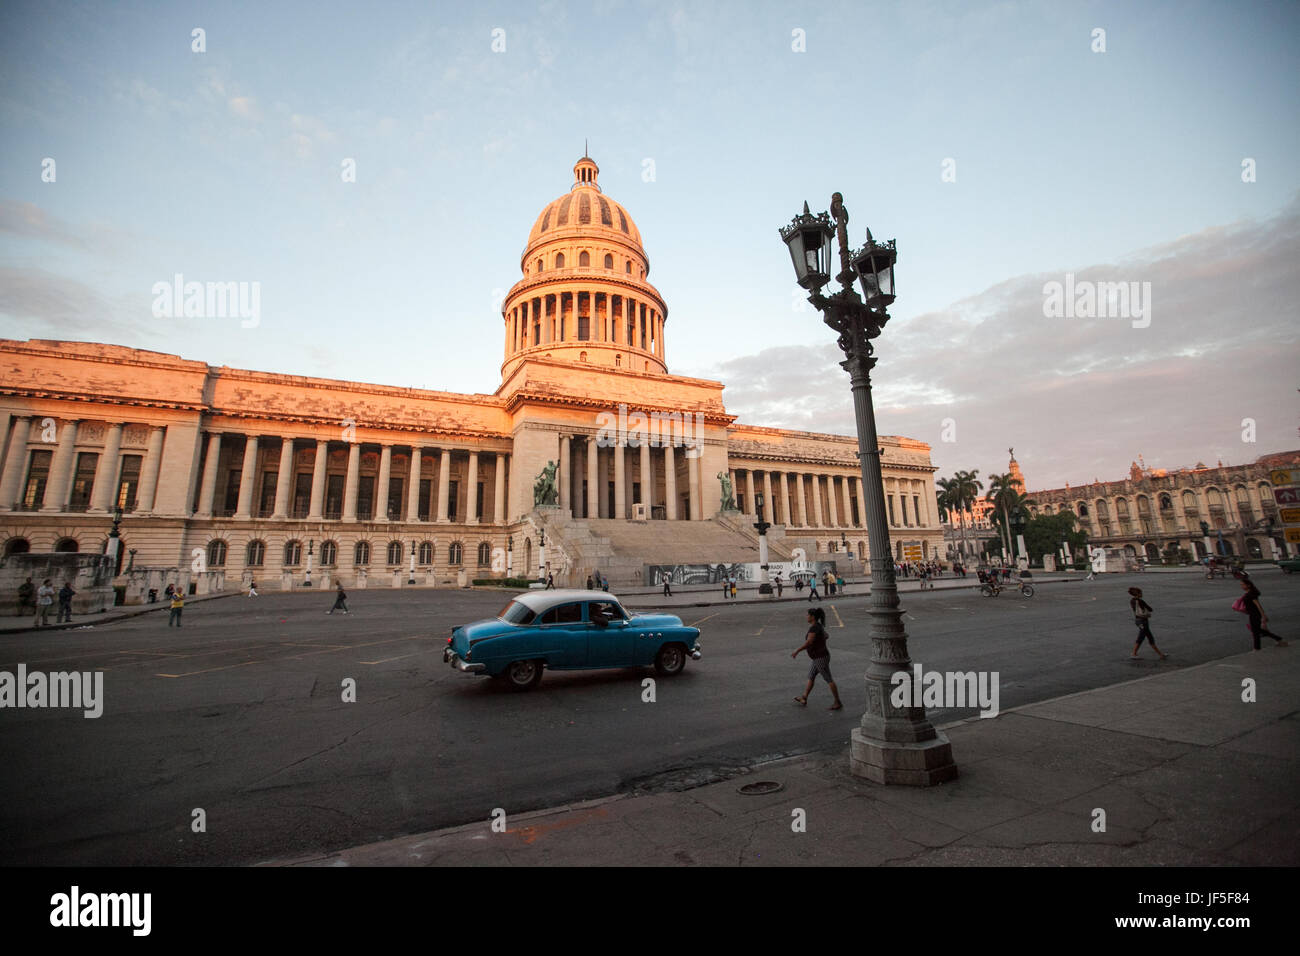 Menschen gehen die Straßen und ein amerikanischen Oldtimer fährt vorbei El Capitolio Gebäude im Zentrum von Havanna. Stockfoto